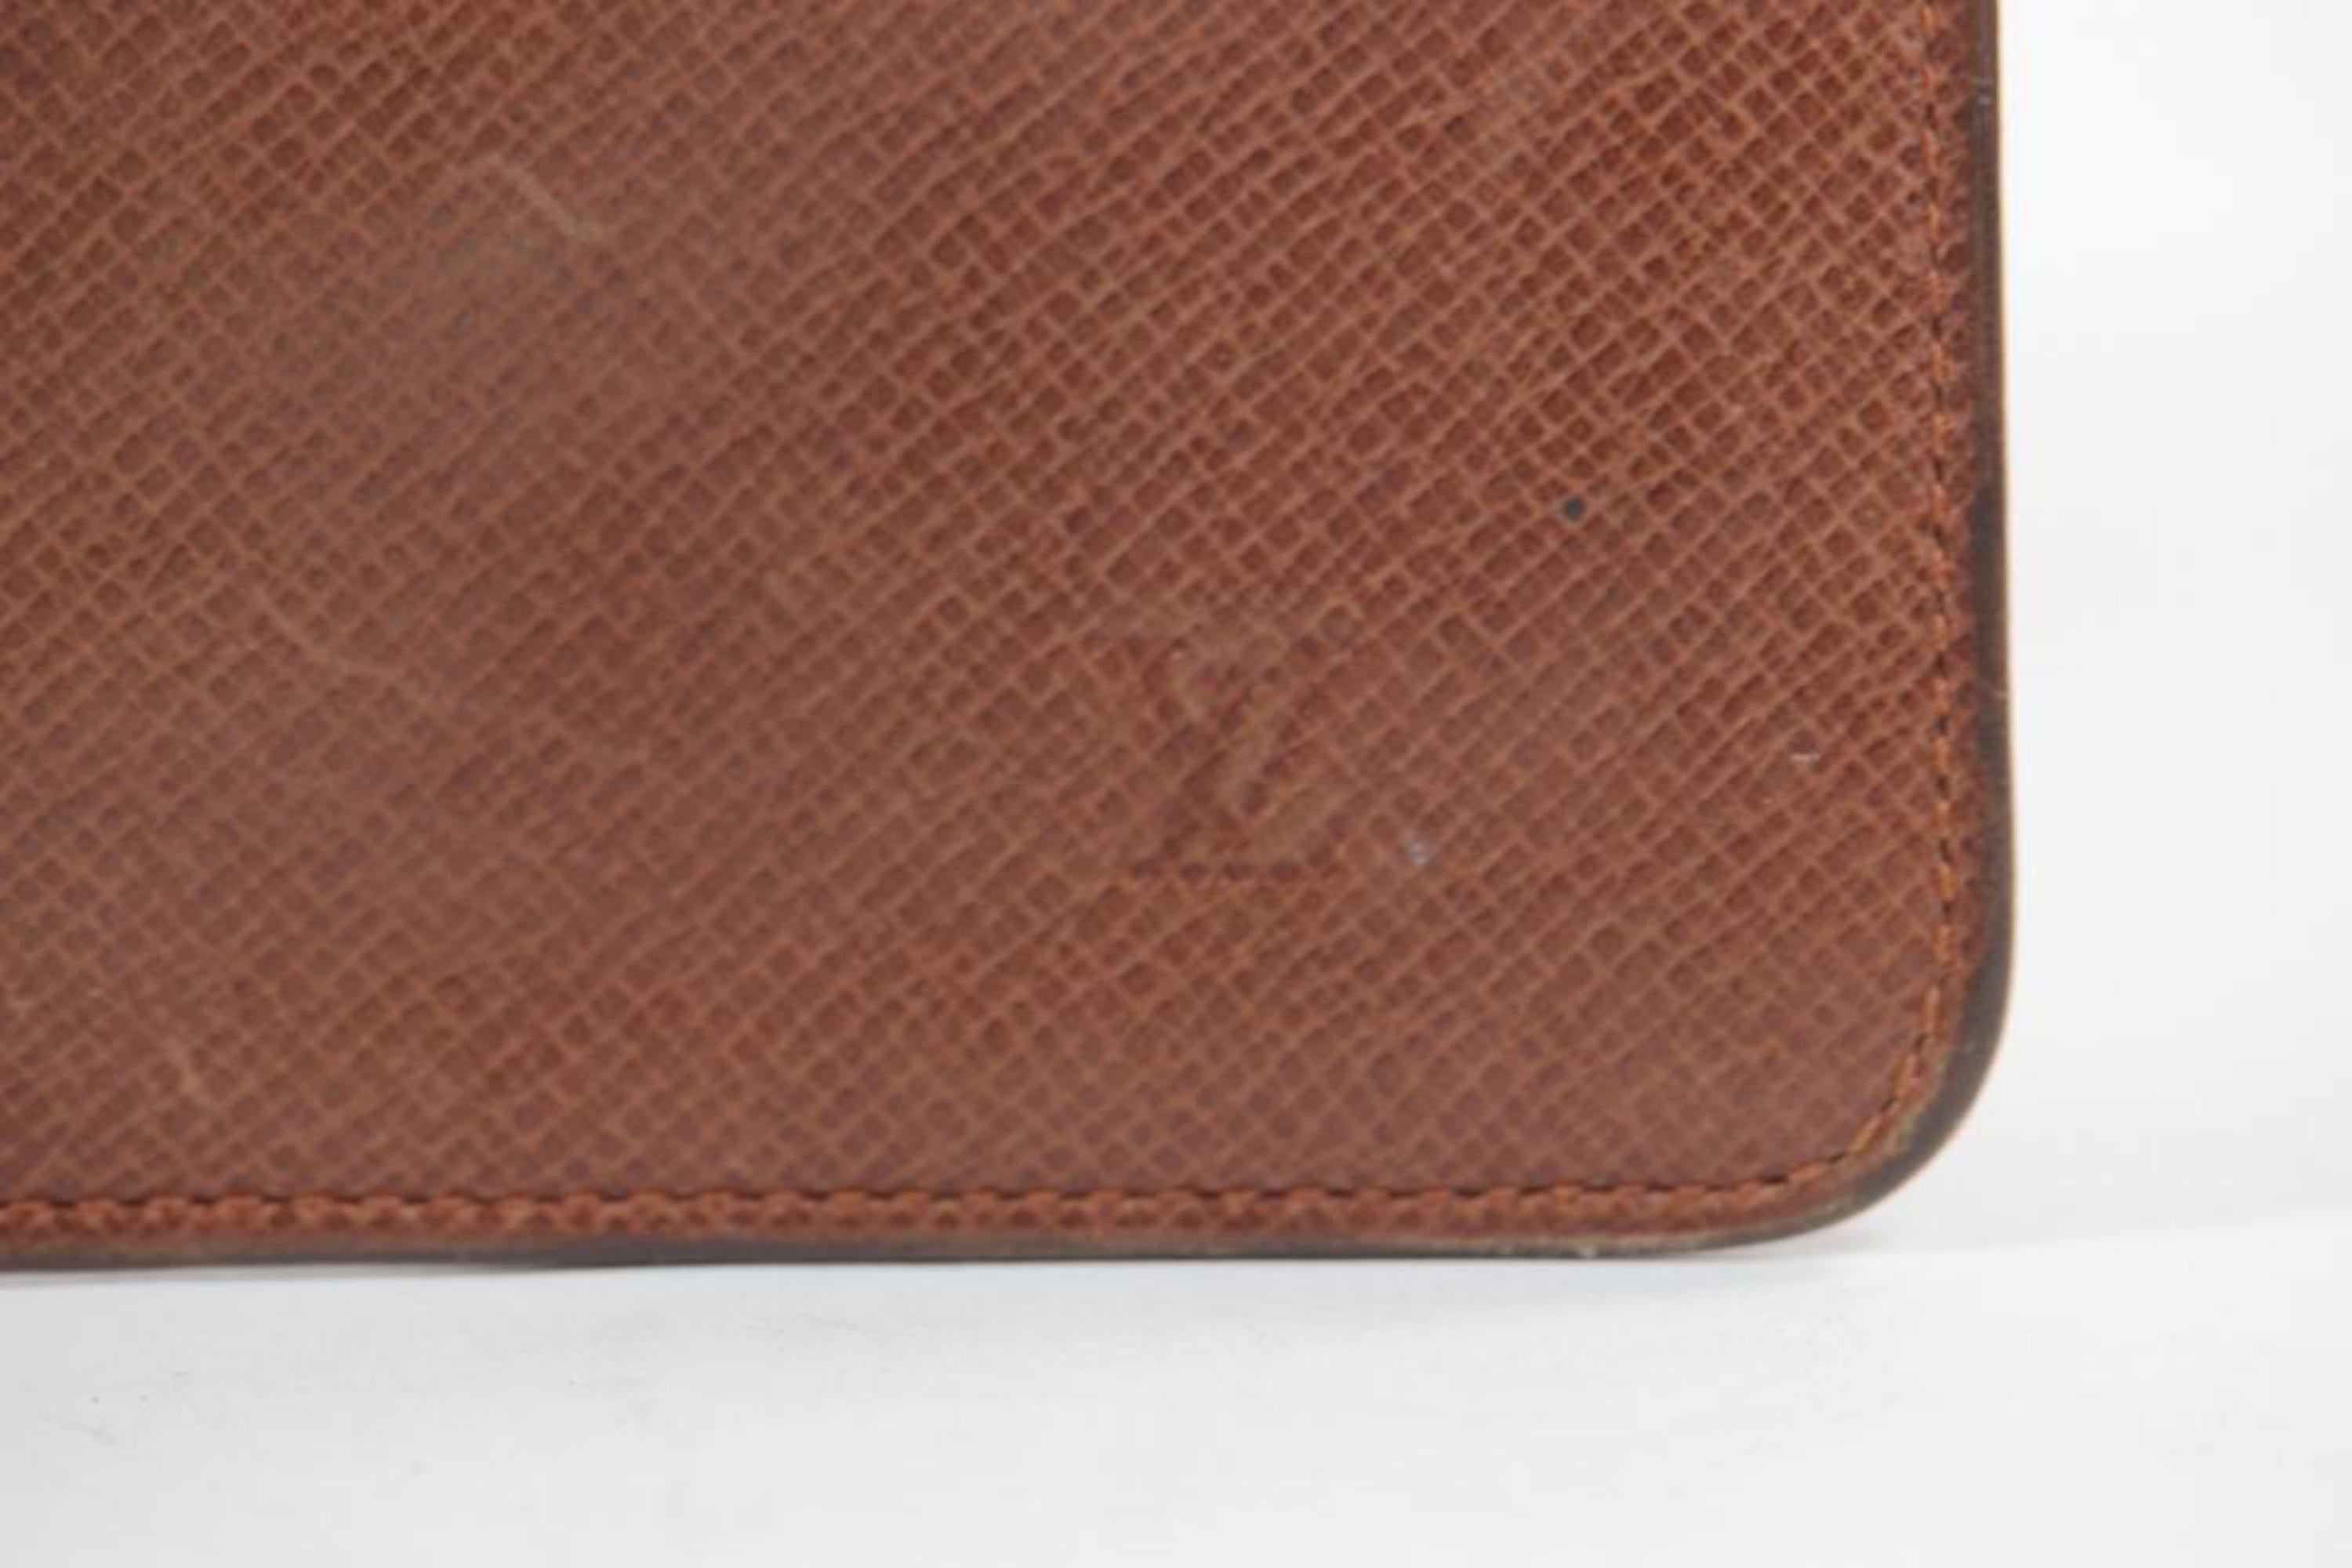 Louis Vuitton - Porte-clés en cuir marron Taiga 13lv1103
Fabriqué en : Espagne
Mesures : Longueur : 4,5 